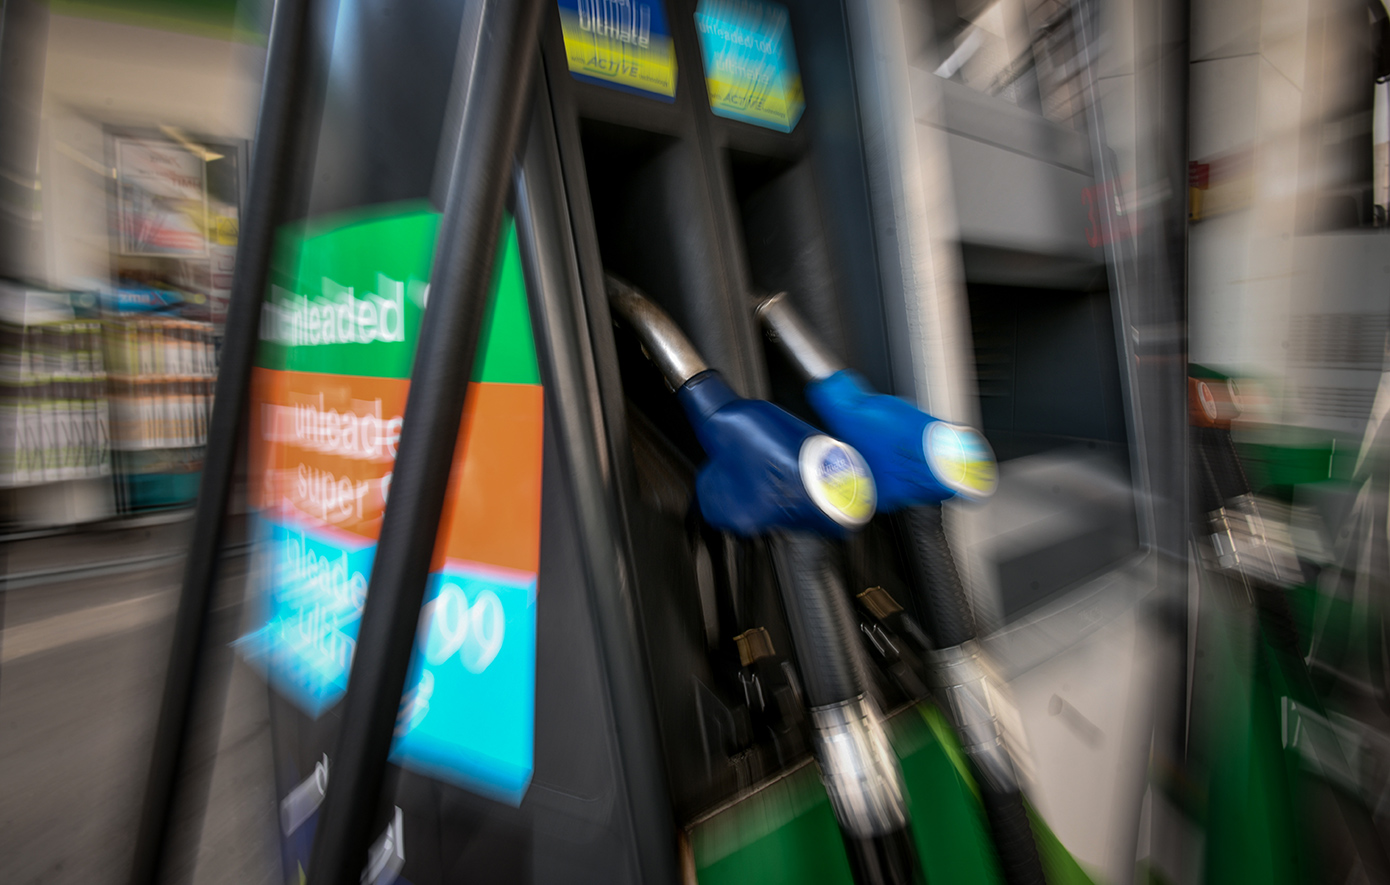 ΑΑΔΕ: Εταιρείες εμπορίας πετρελαιοειδών και διυλιστήρια θα ενημερώνουν άμεσα για παραβάσεις πρατηρίων